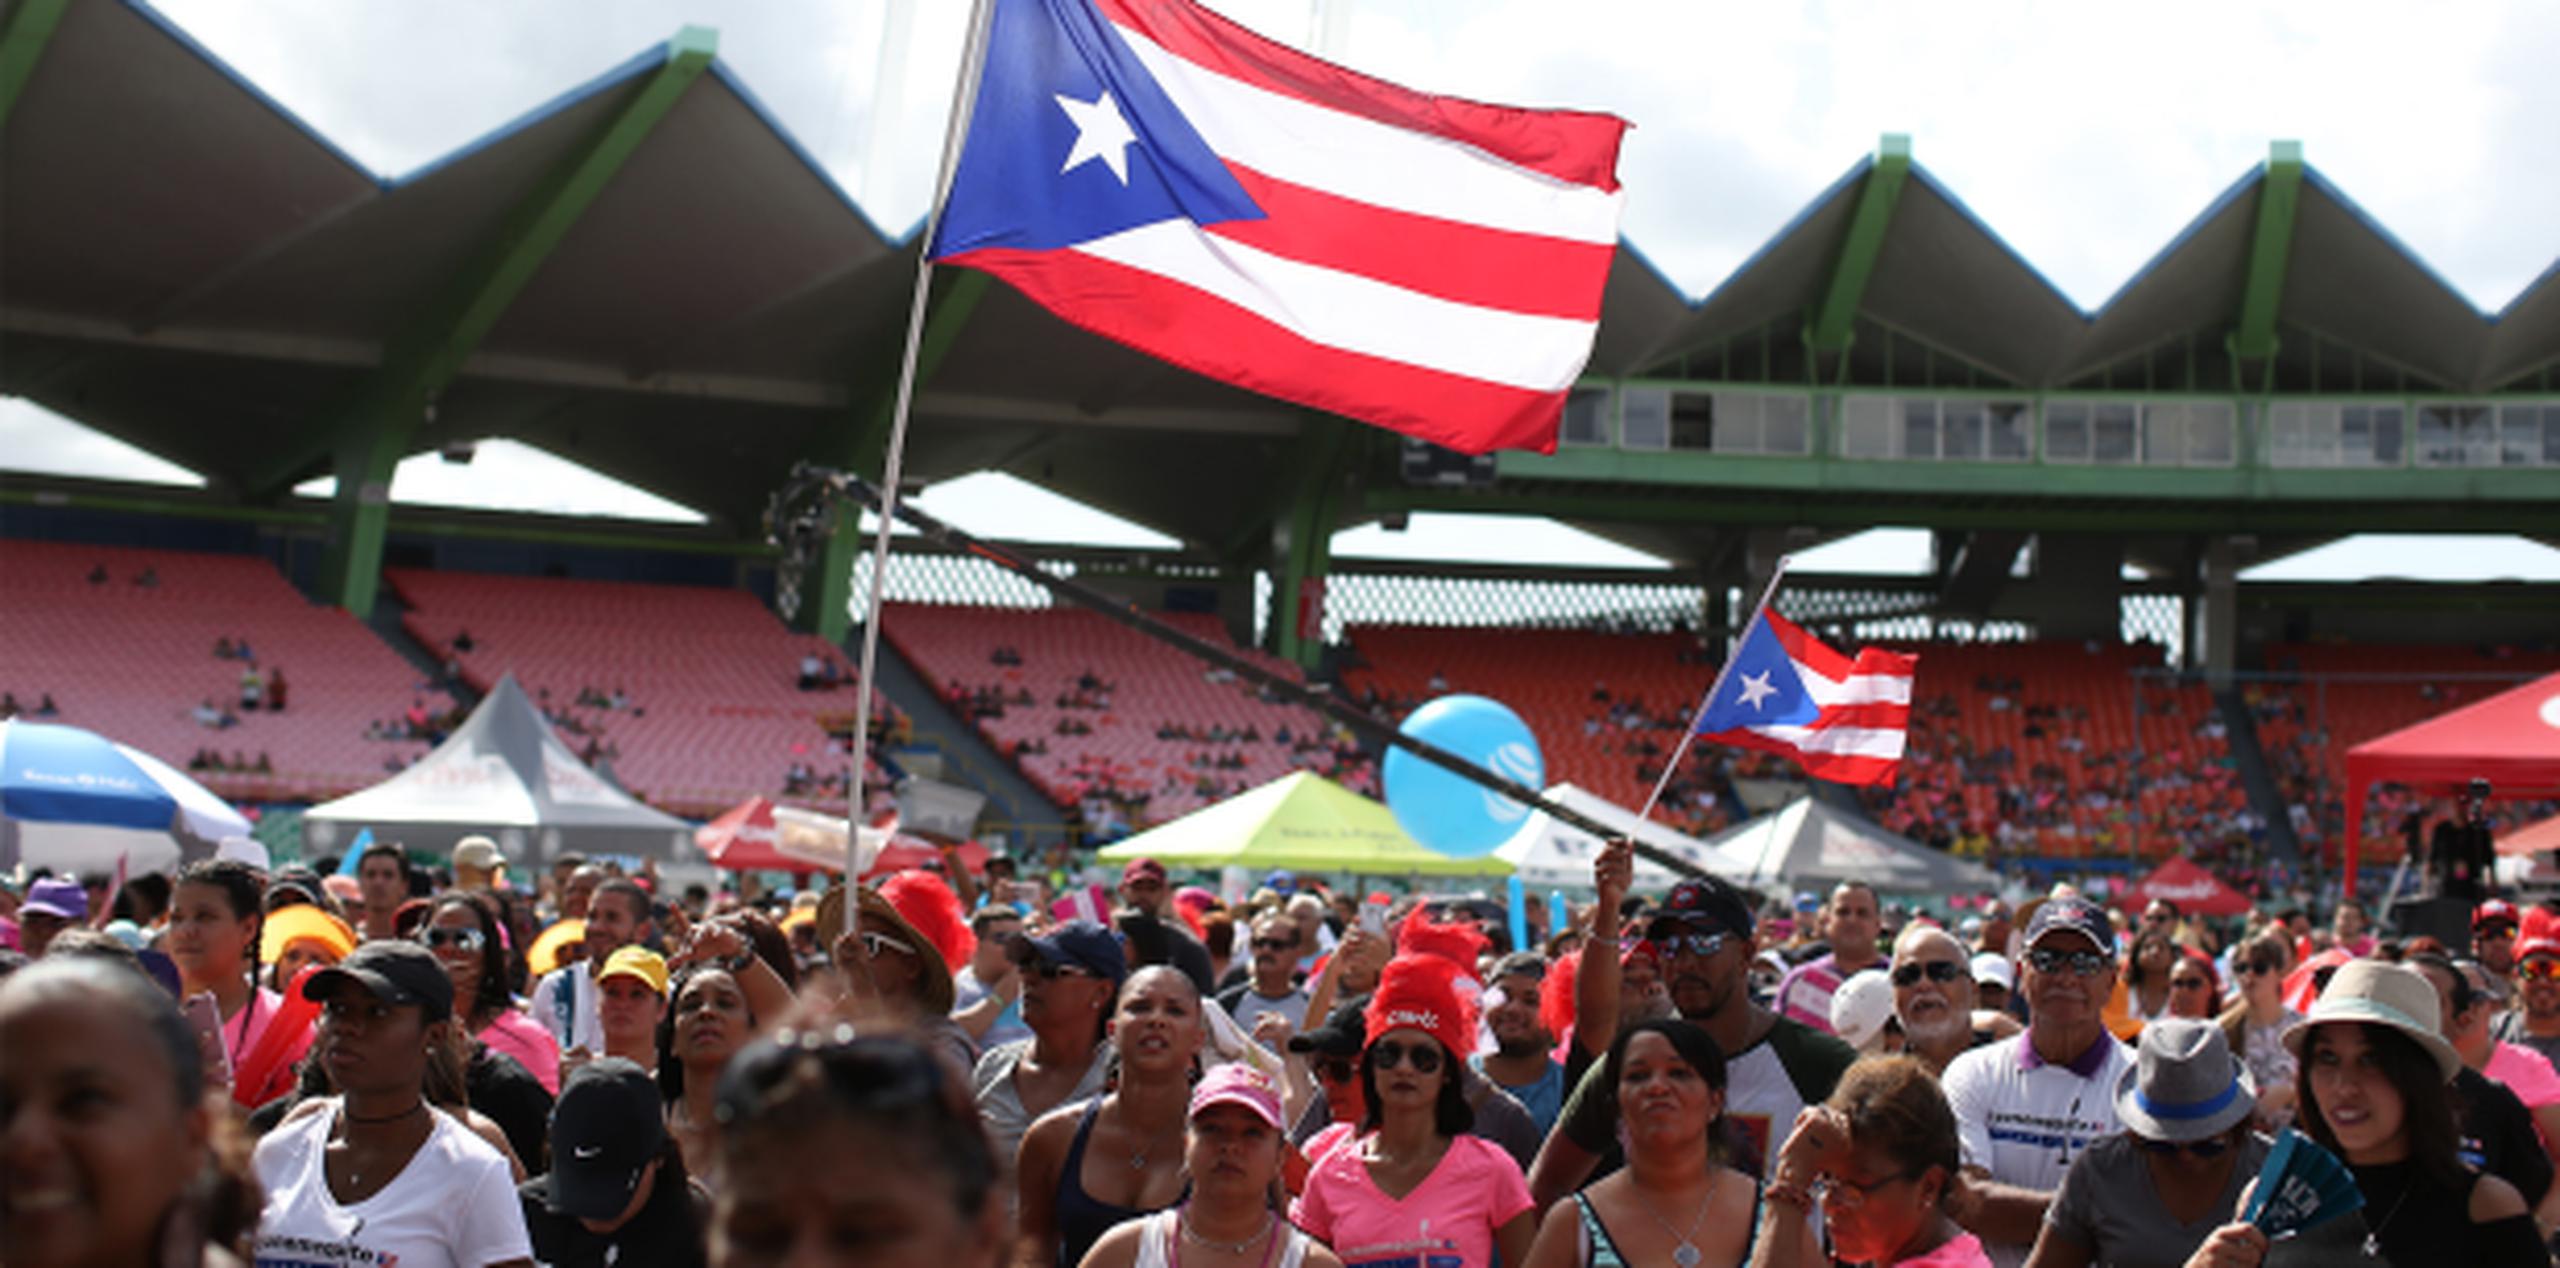 Para entonces cientos de personas habían llegado bajo el sol inclemente dispuestos a darse su bailadita y cantar, algunos ondeando banderas de Puerto Rico. (Fotos / José Cruz Candelaria)